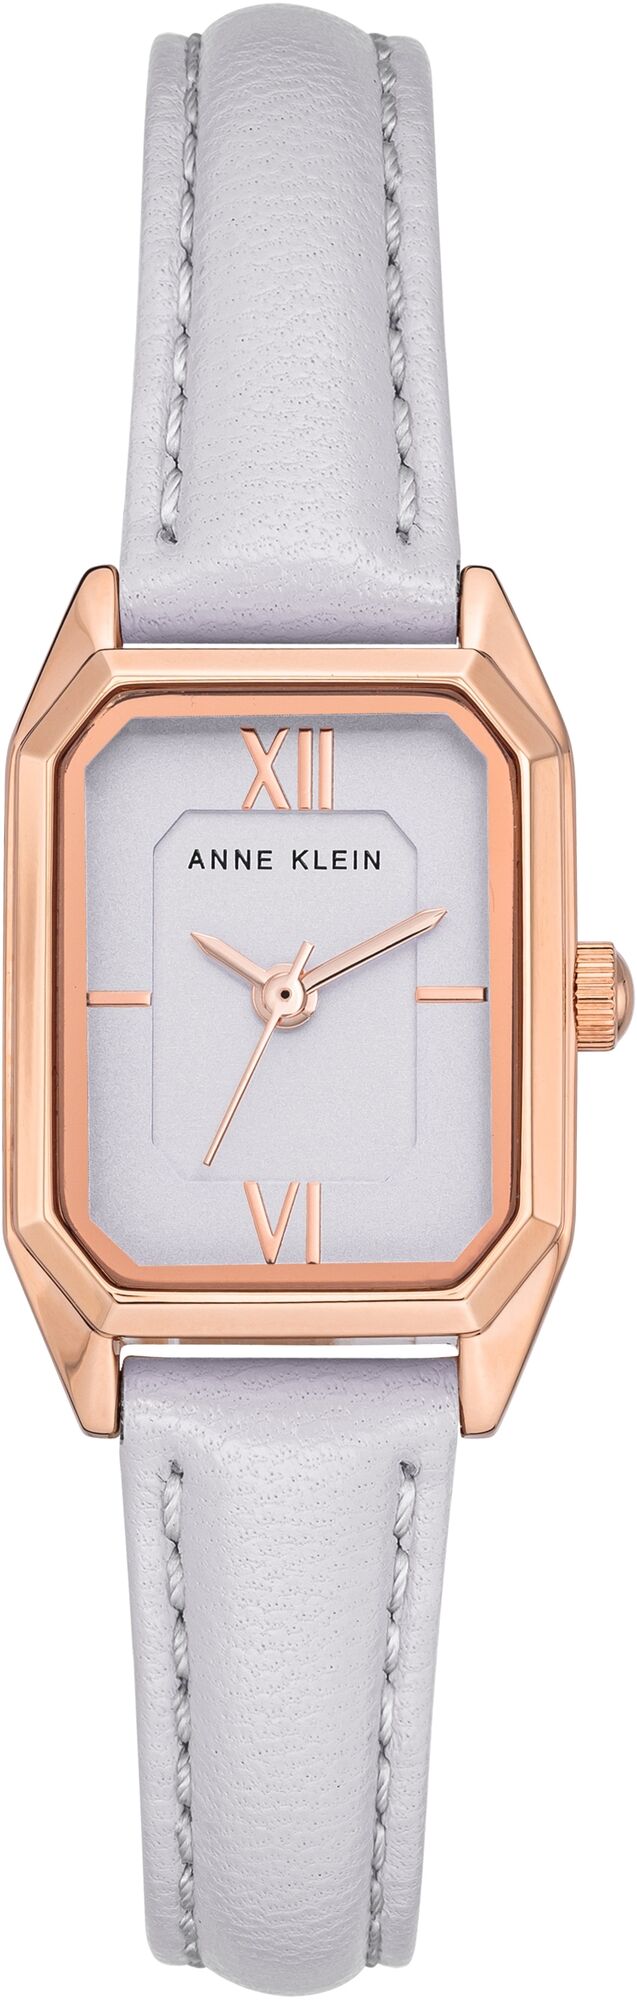 Женские наручные часы Anne Klein Leather 3968RGLV